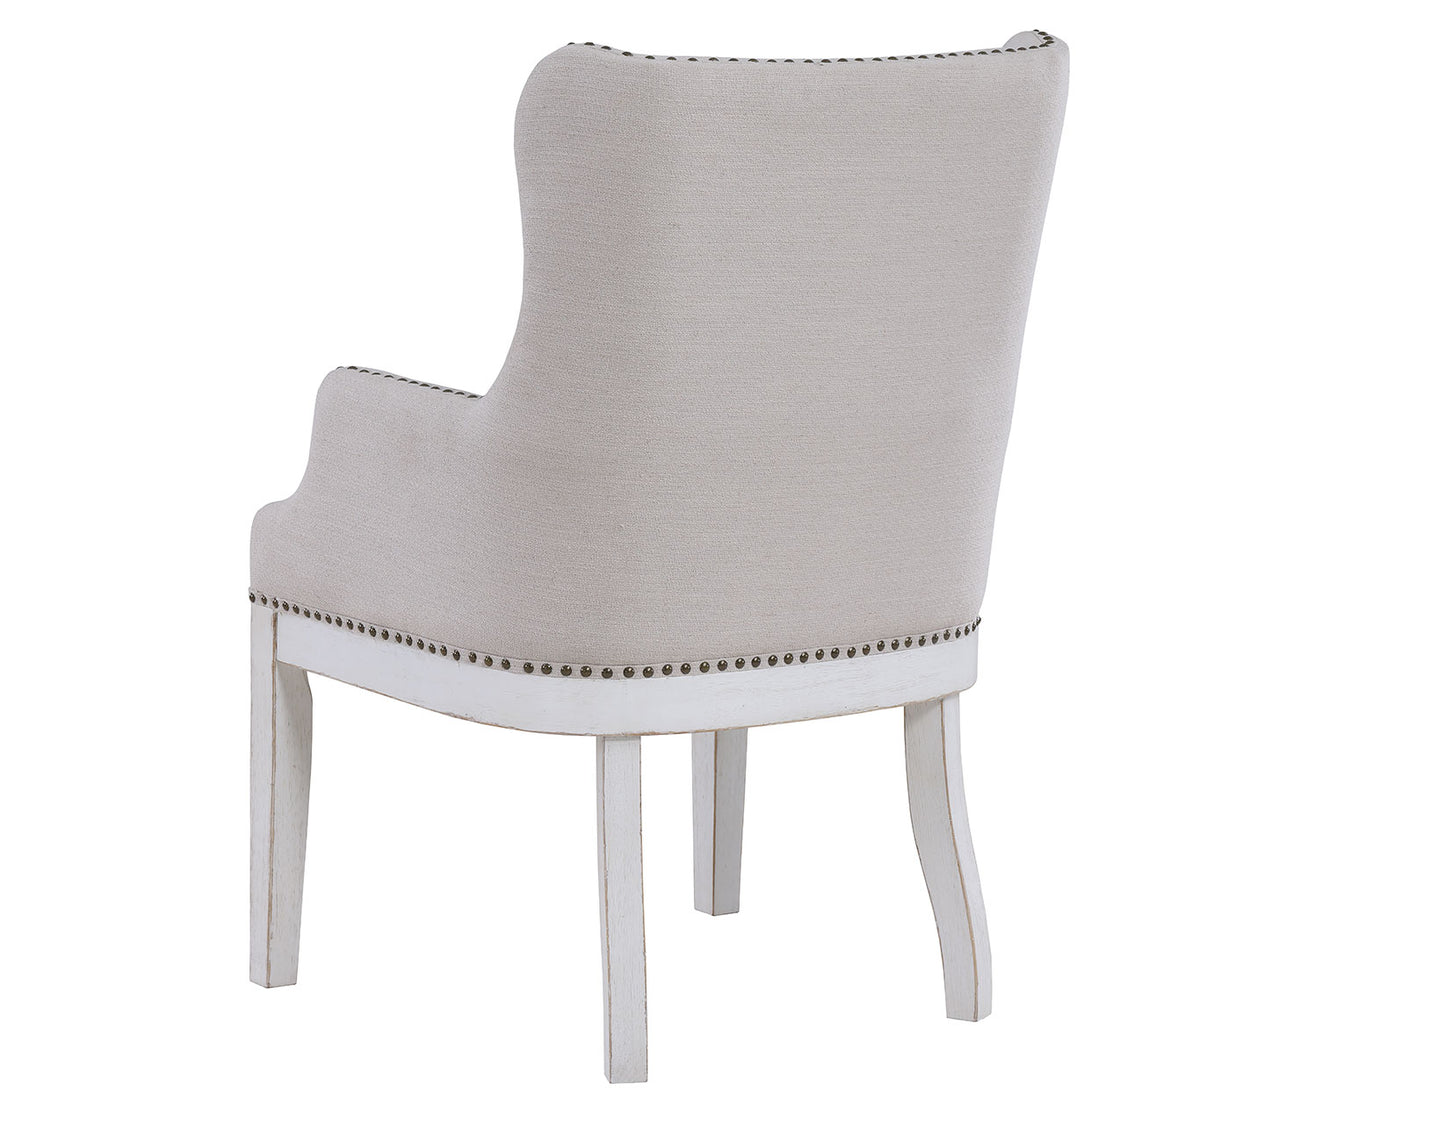 Warren Arm Chair, White